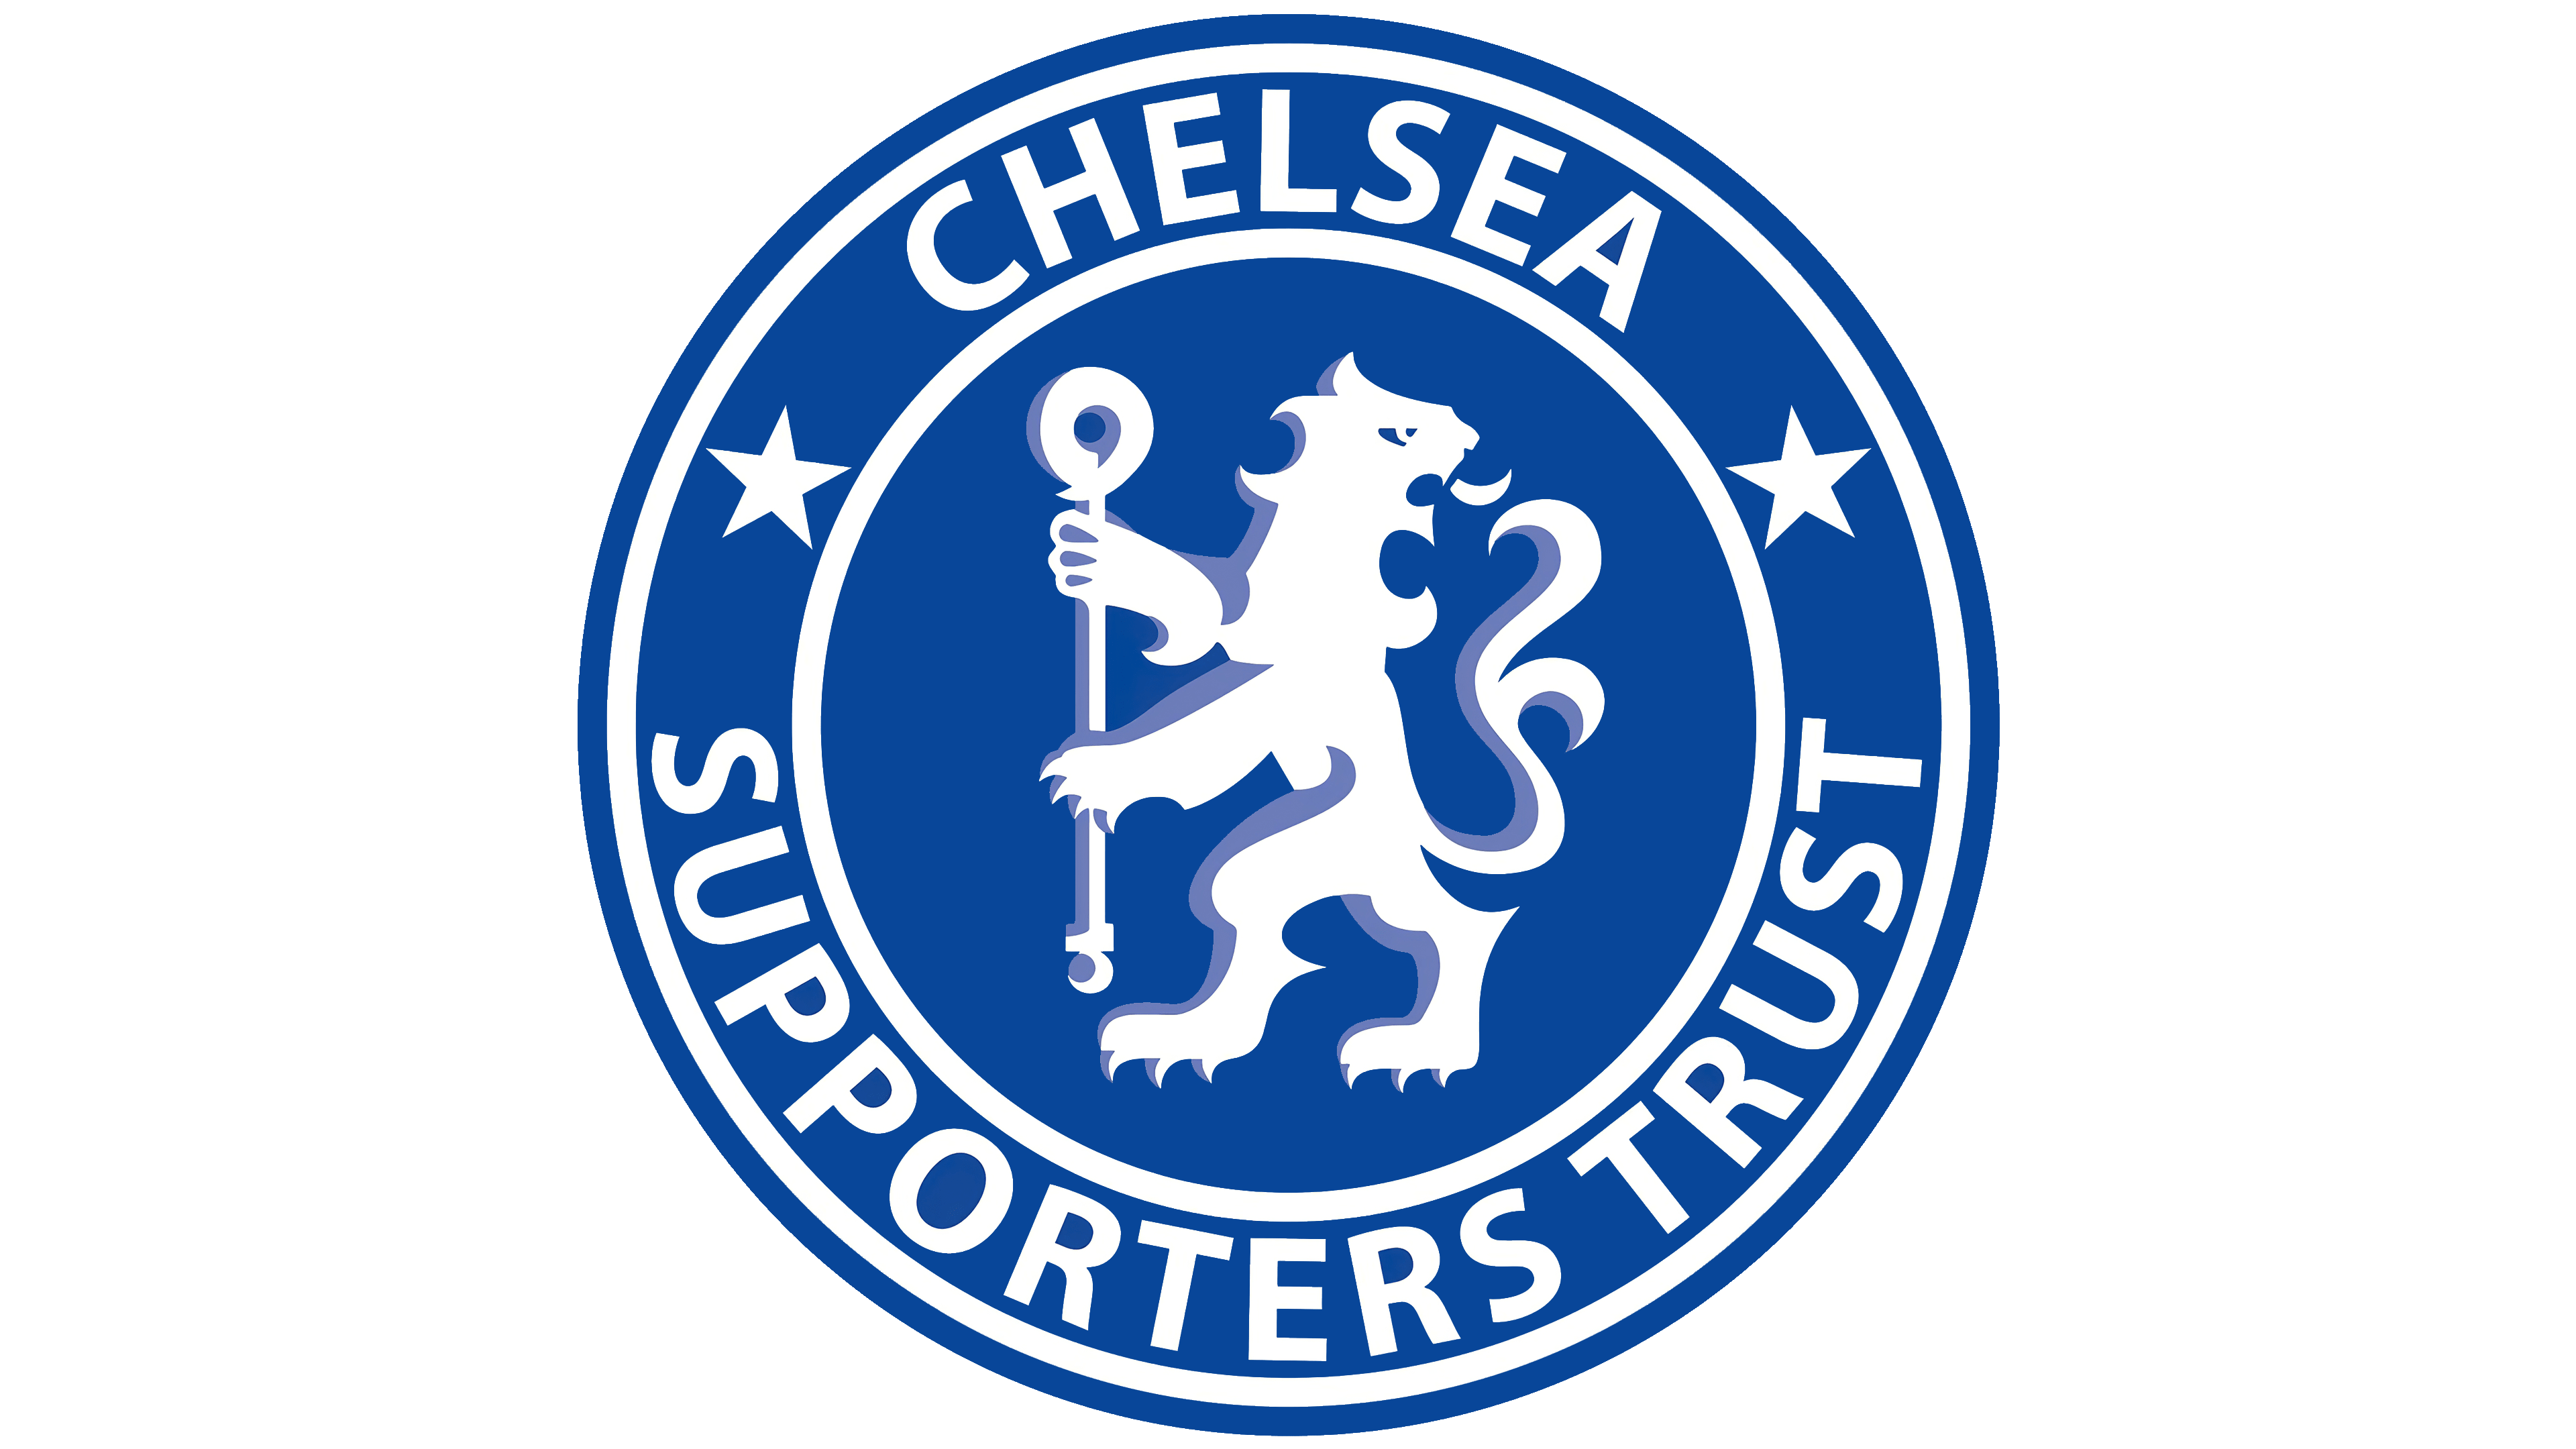 ธง Chelsea ภาพโปร่งใส